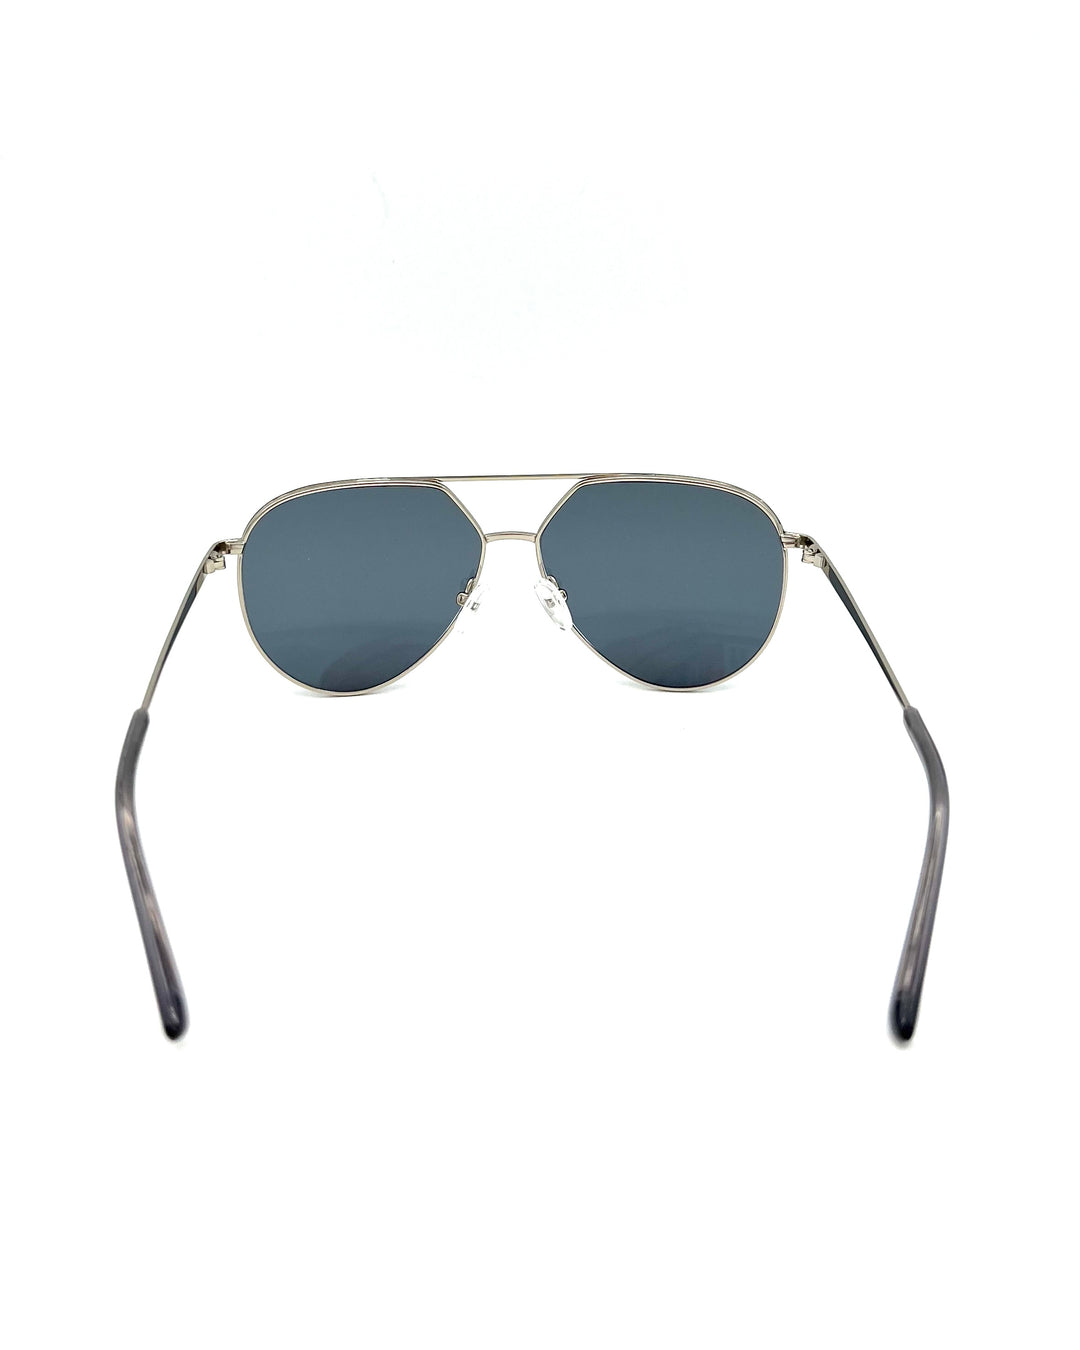 Silver Aviator Frame Sunglasses